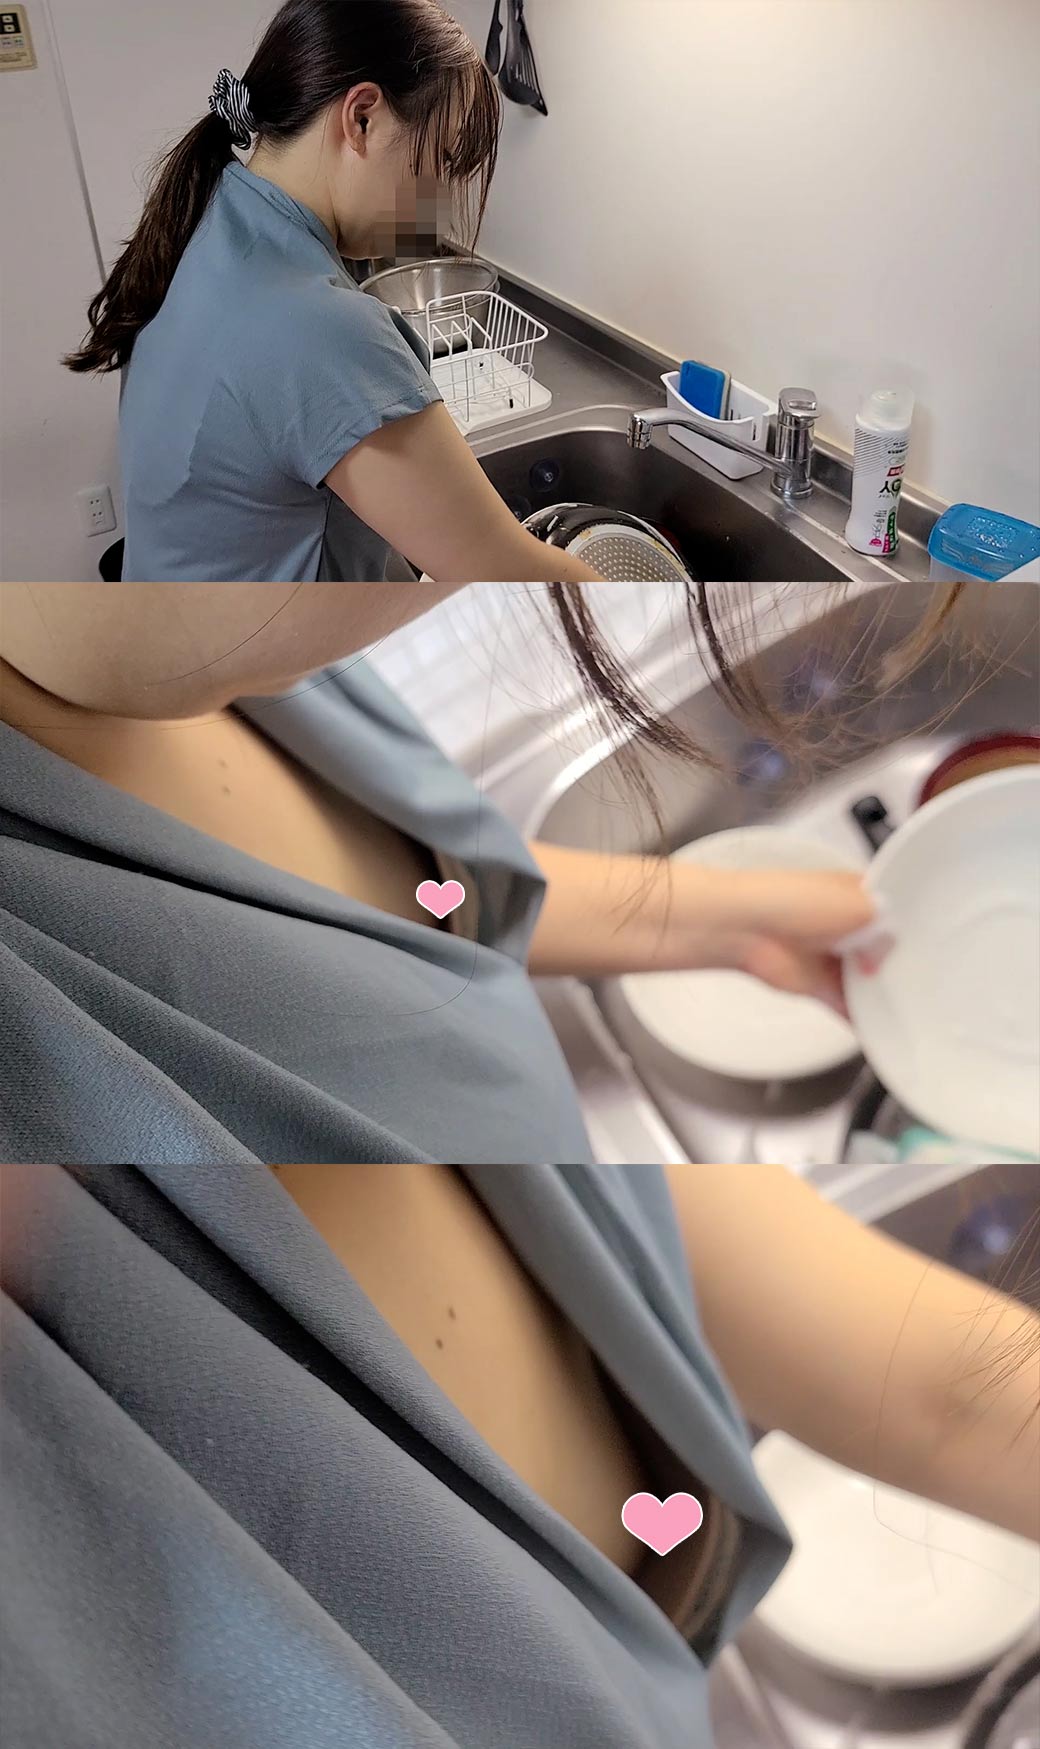 【流出】食器洗い中に胸チラを撮影。年上女性の家事。【パンチラ/美乳】